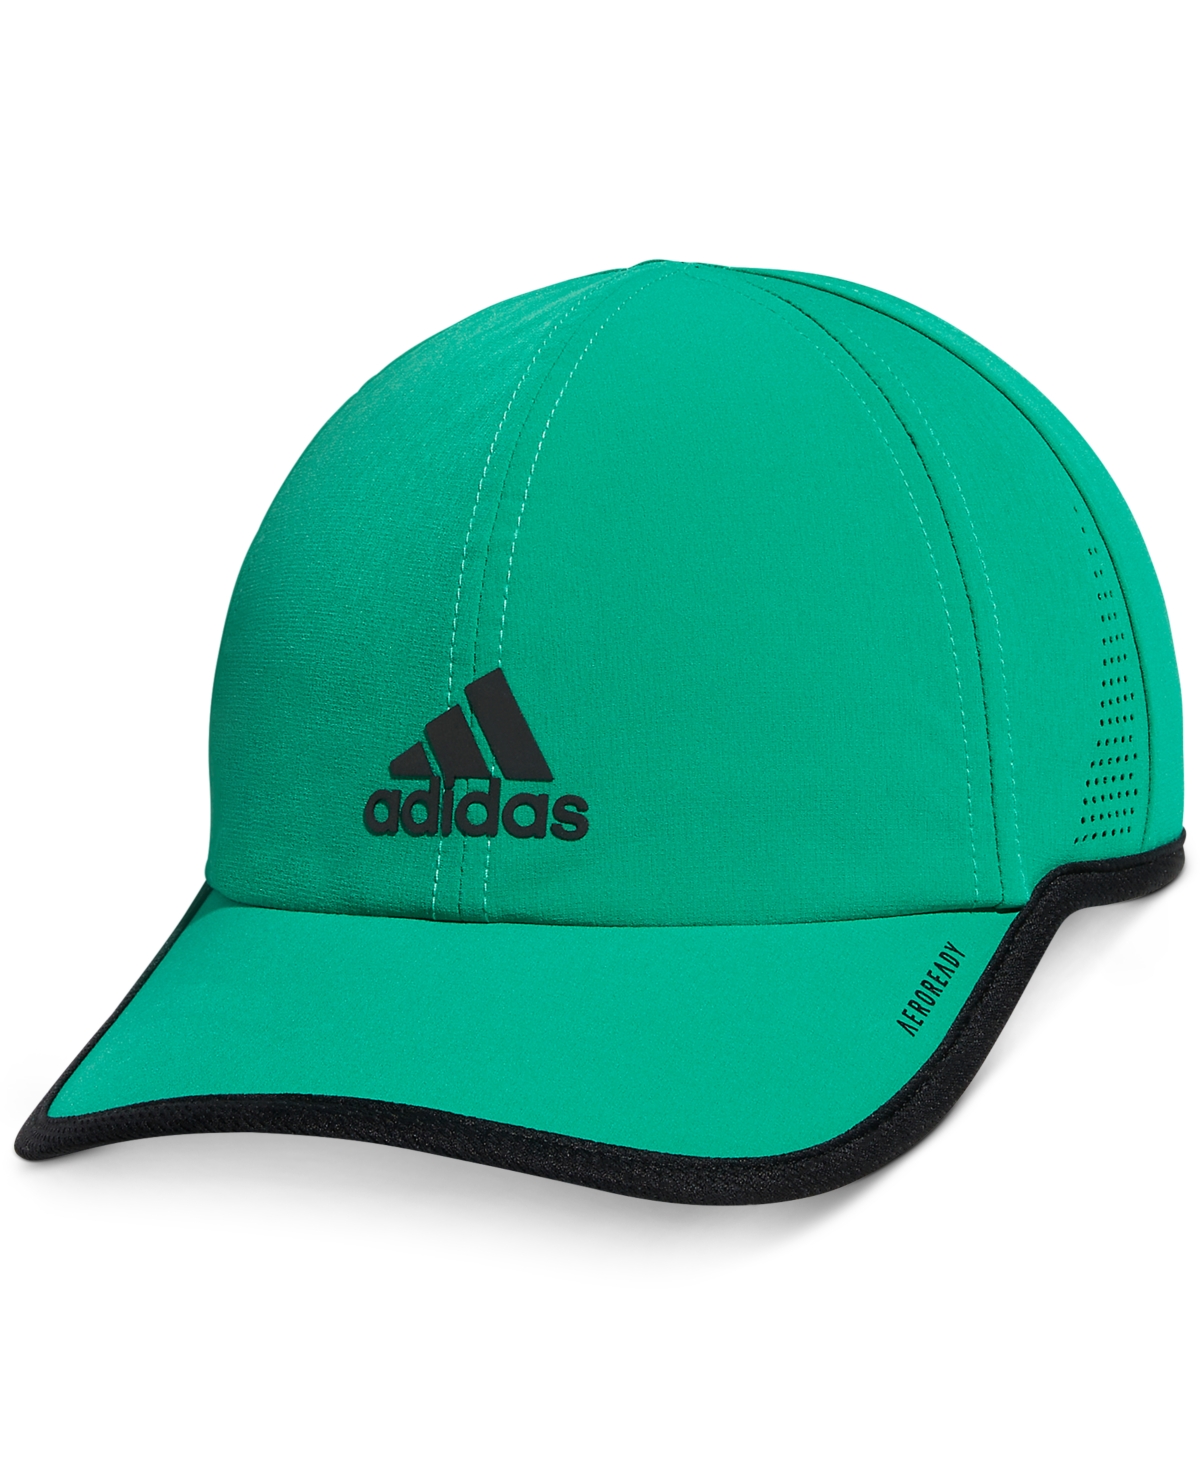 Adidas Originals Adidas Men's Cap In Court Green/black | ModeSens